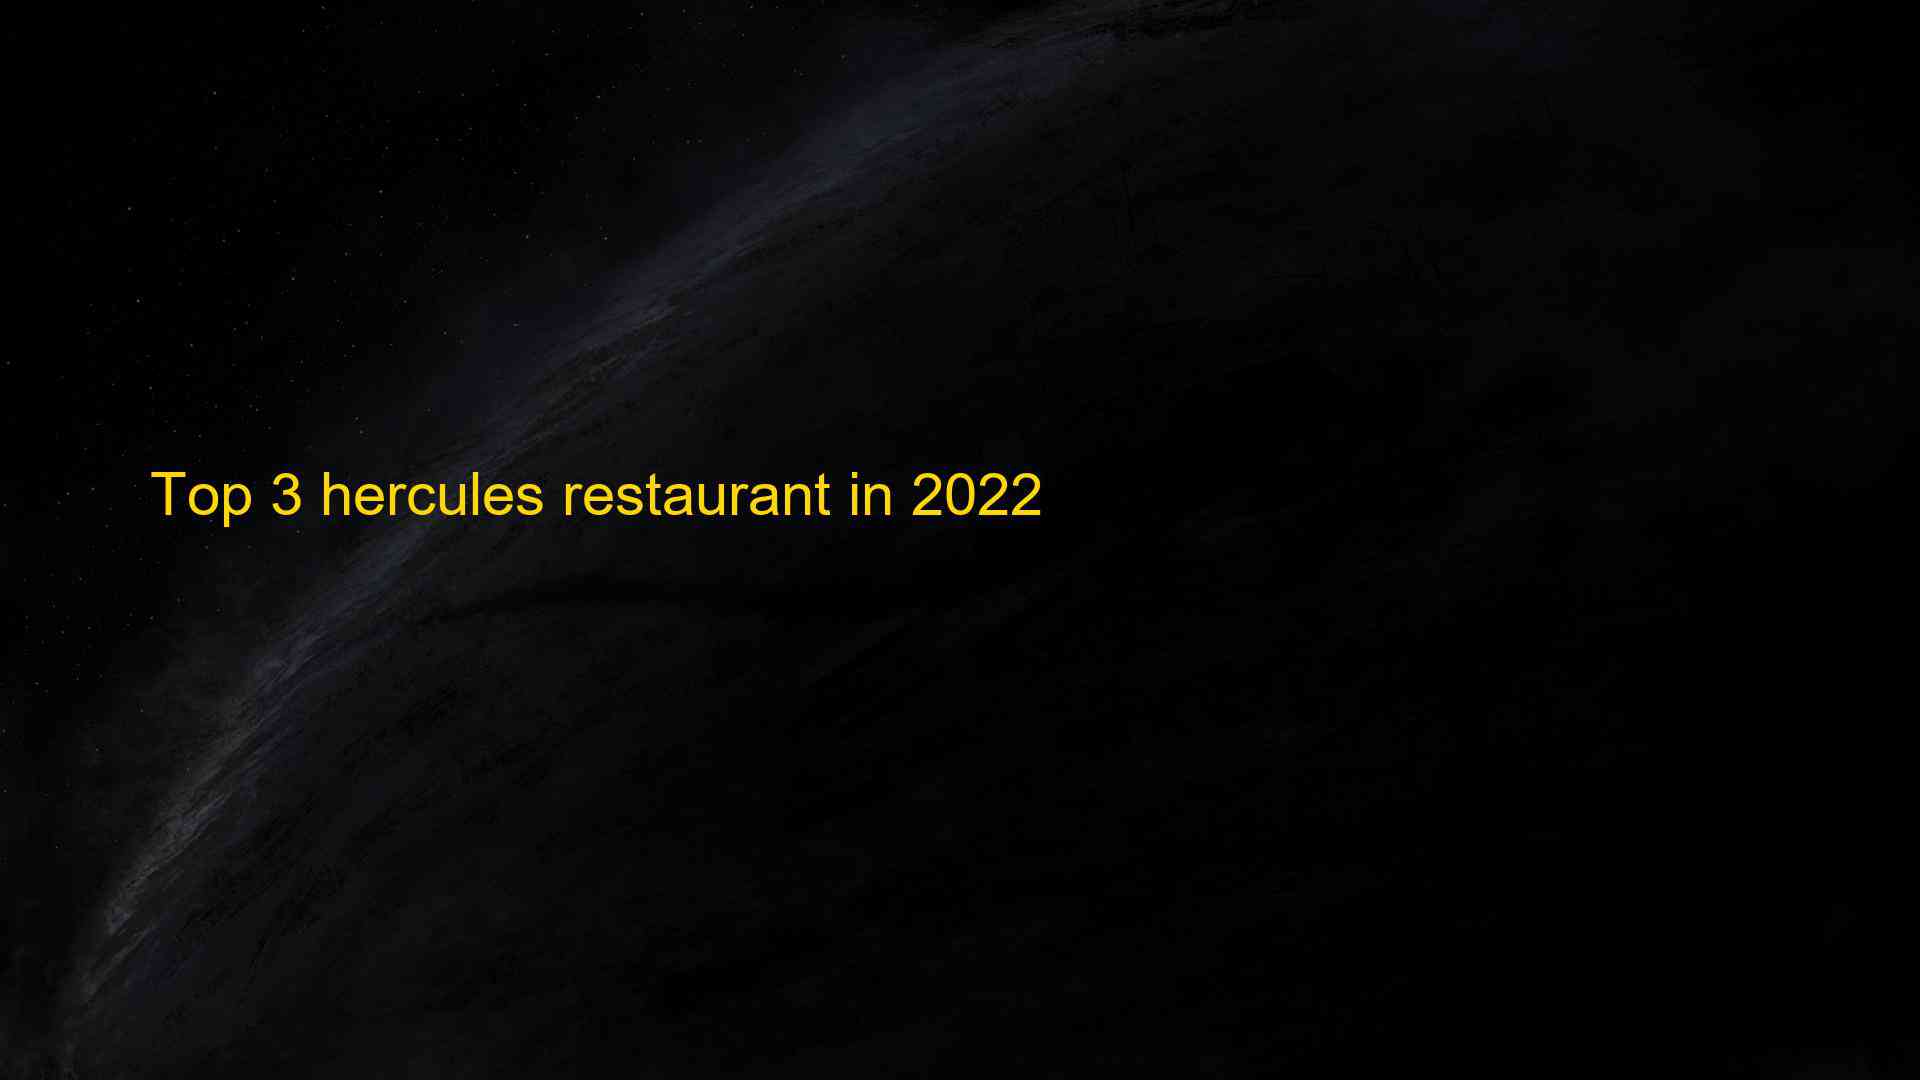 Top 3 hercules restaurant in 2022 1663390950